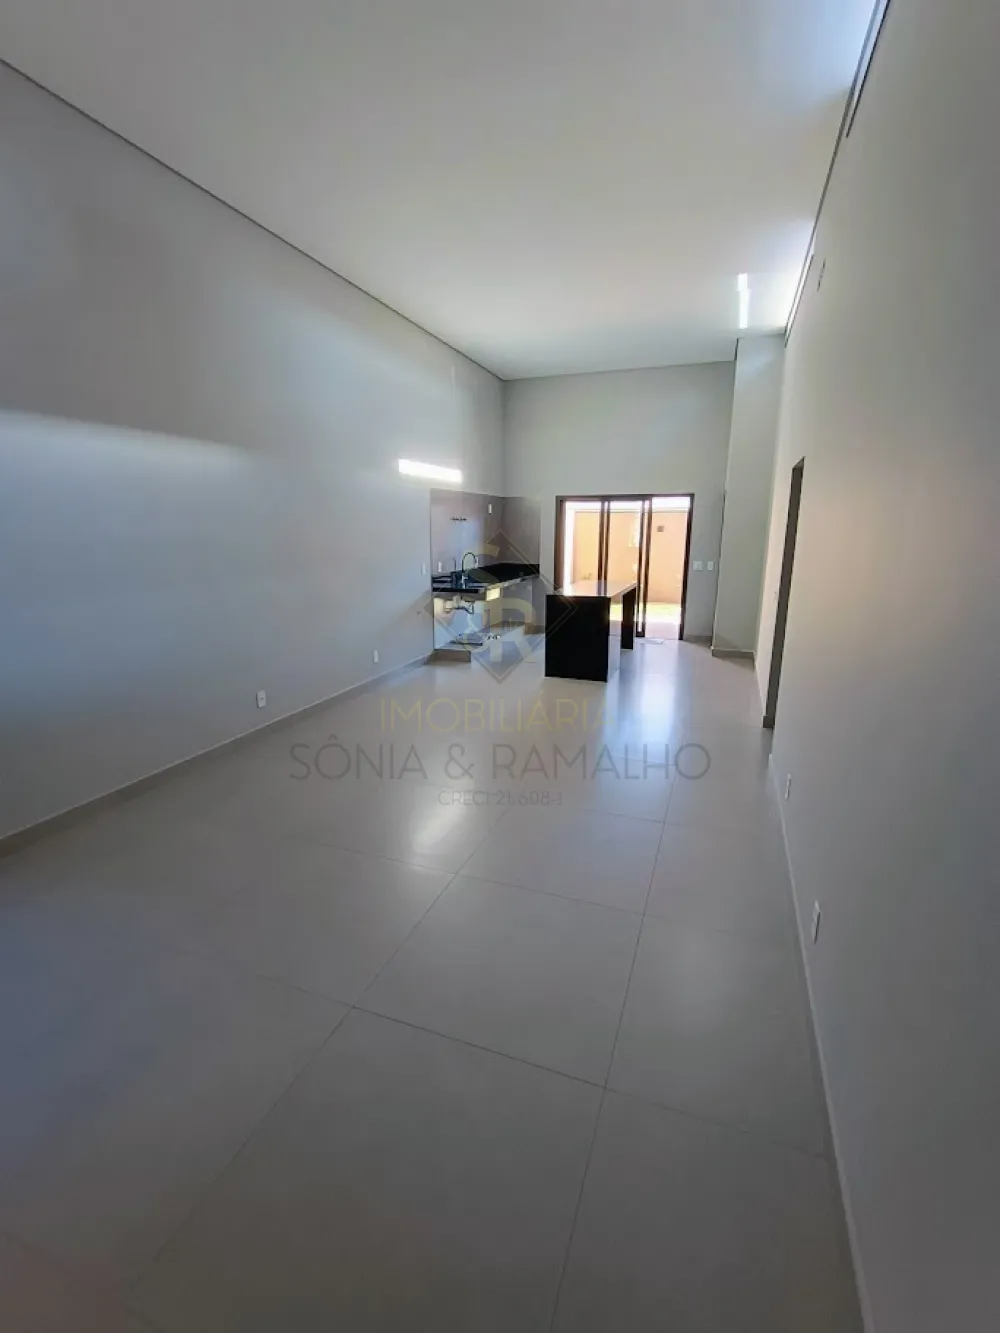 Comprar Casas Residenciais / Condomínio em Ribeirão Preto R$ 1.050.000,00 - Foto 9